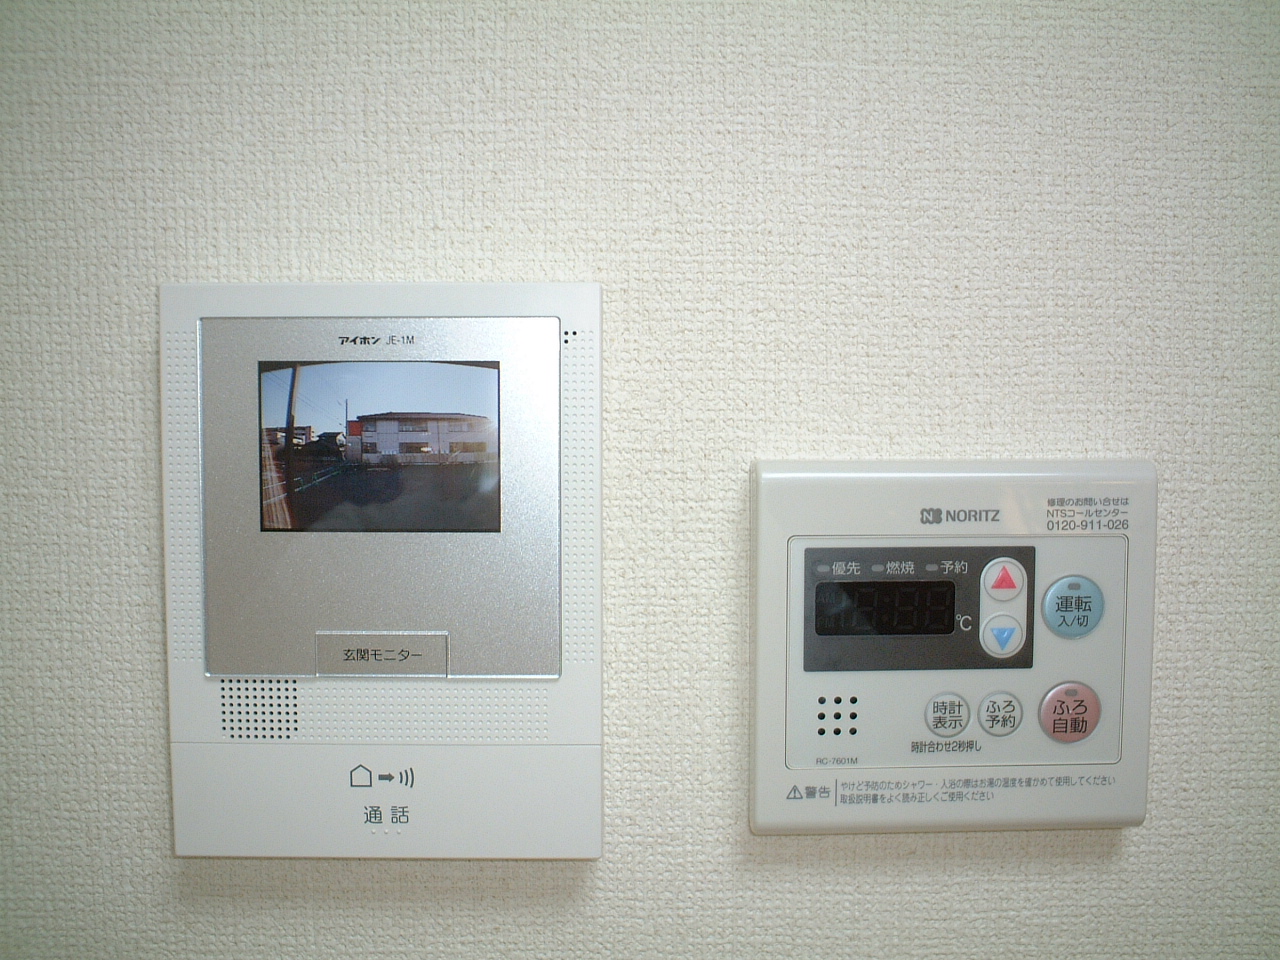 Security. TV monitor Hong